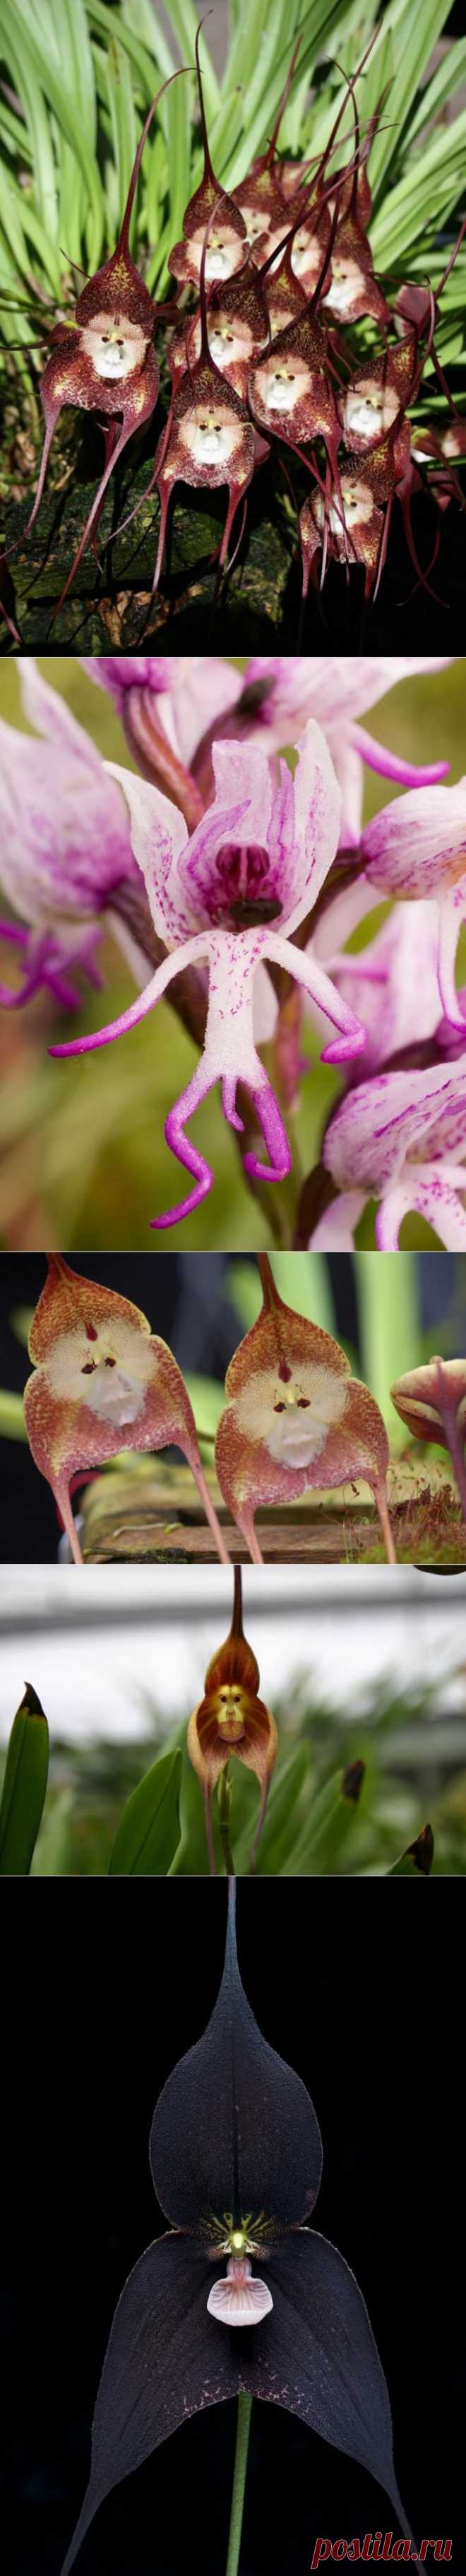 Обезьяньи Орхидеи: Ятрышник и Дракула |